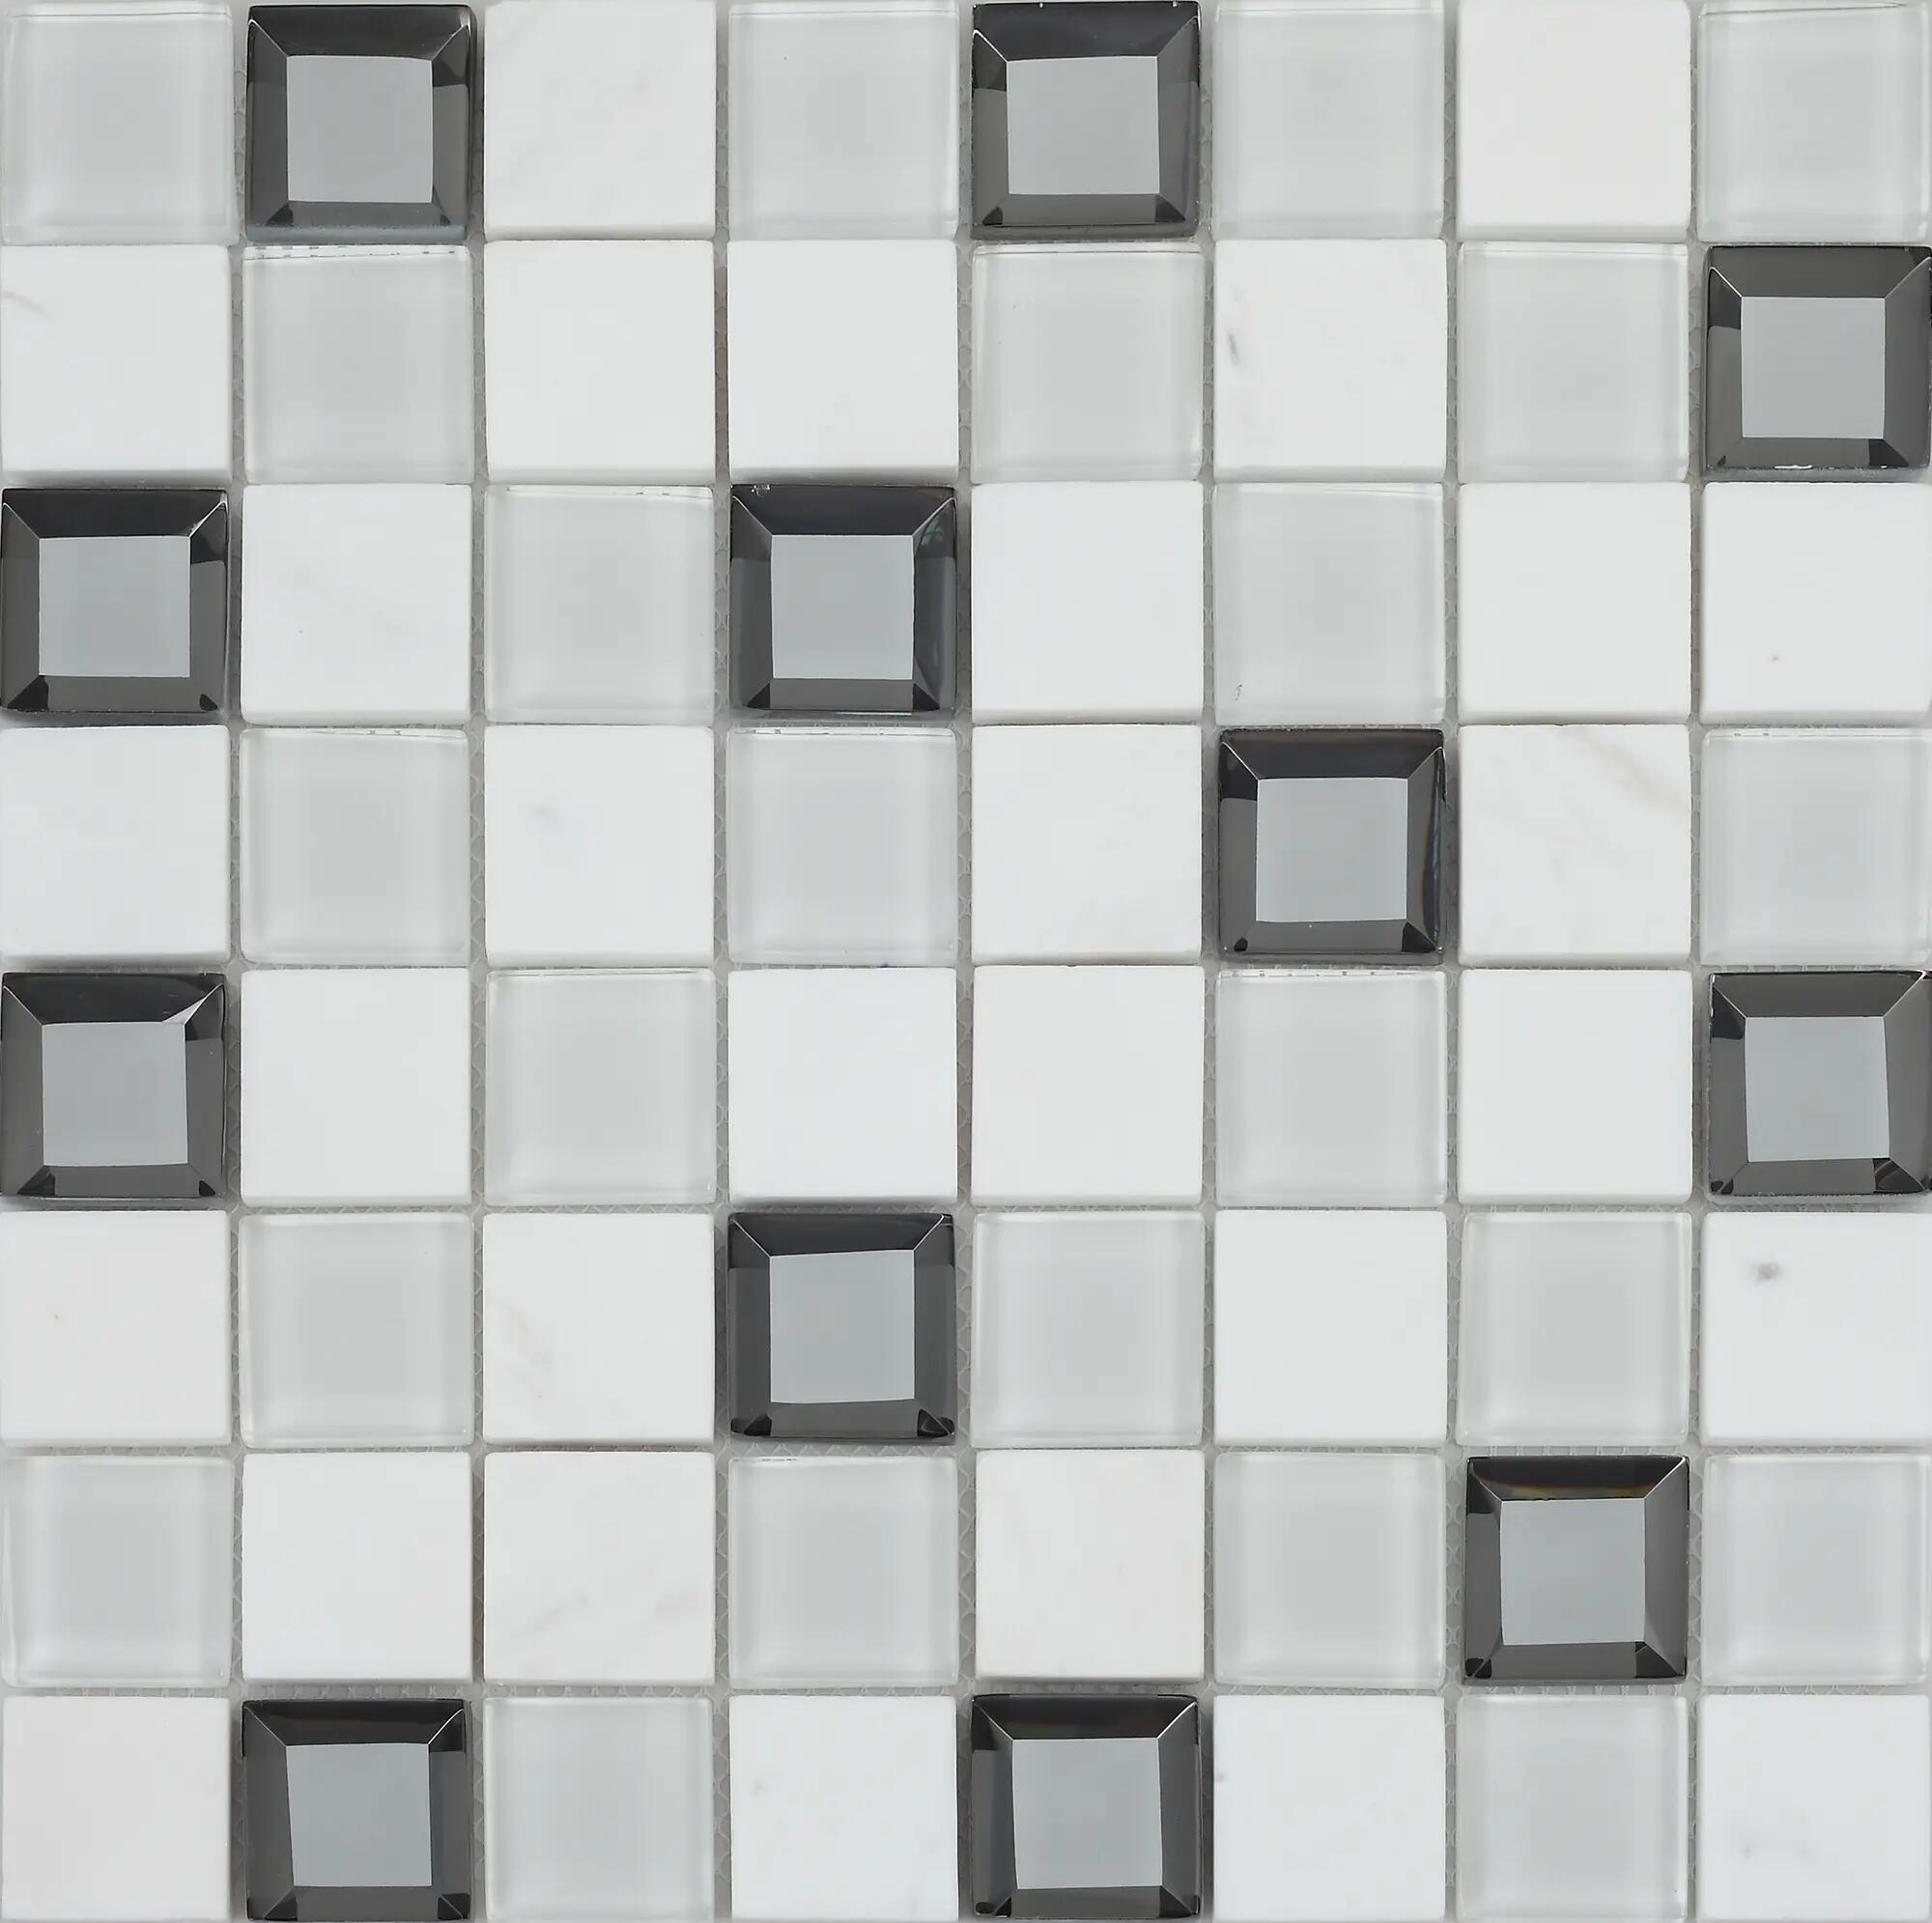 Mosaico keops 30x30 cm blanco